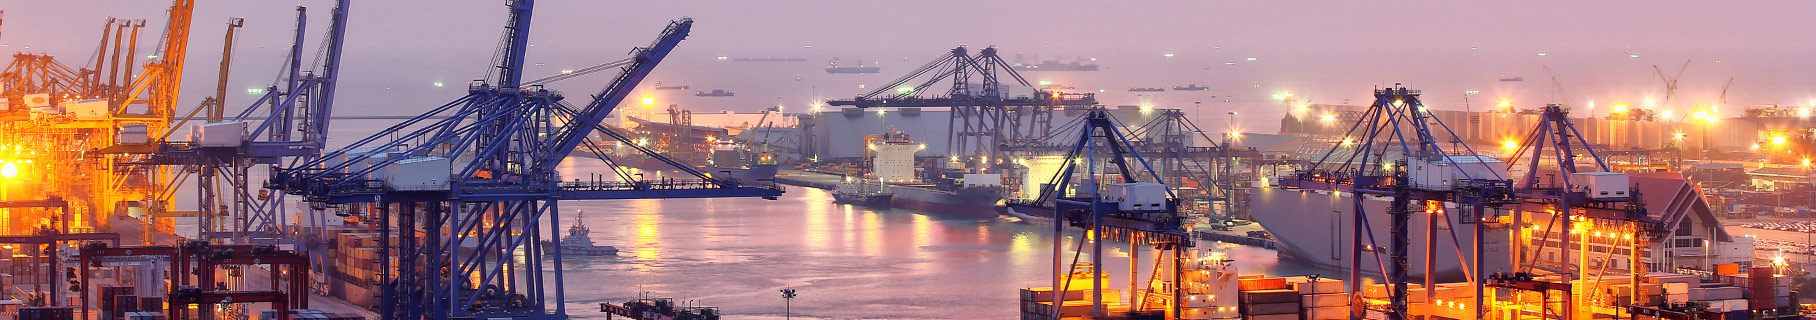 Image of a ship yard